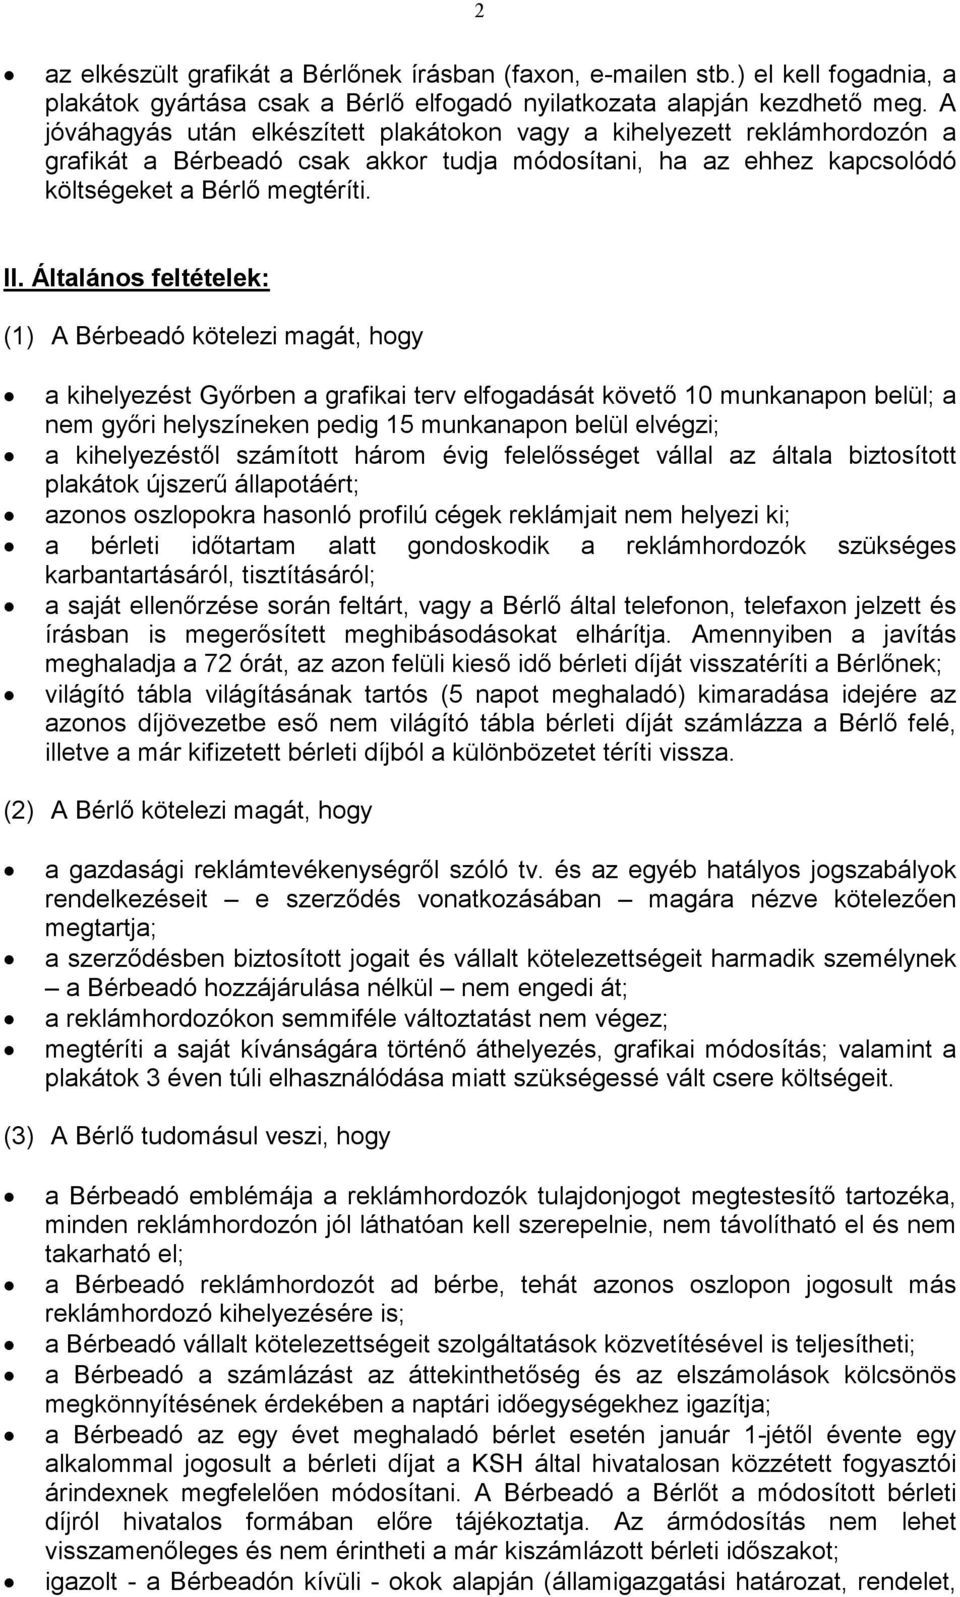 Általános feltételek: (1) A Bérbeadó kötelezi magát, hogy a kihelyezést Győrben a grafikai terv elfogadását követő 10 munkanapon belül; a nem győri helyszíneken pedig 15 munkanapon belül elvégzi; a